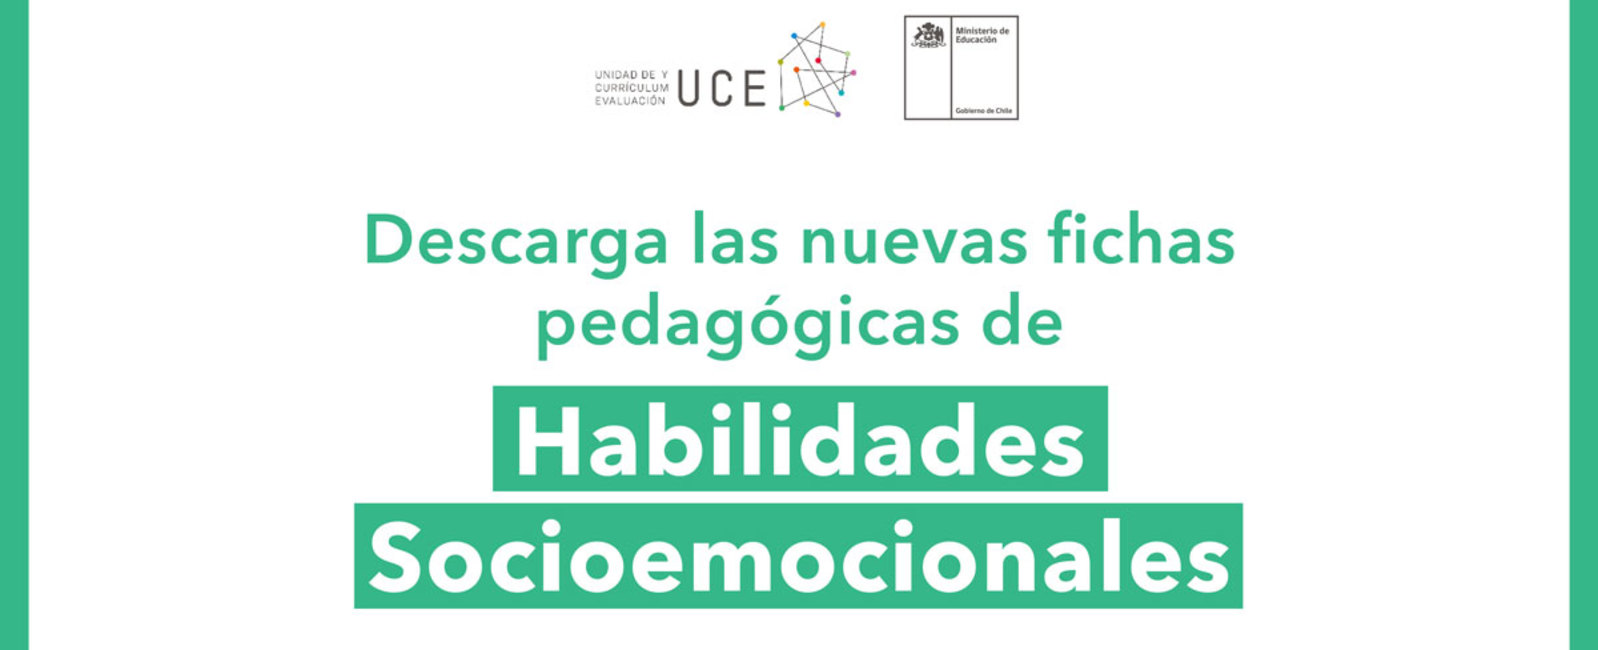 Descarga las nuevas fichas pedagógicas de Habilidades Socioemocionales -  Curriculum Nacional. MINEDUC. Chile.